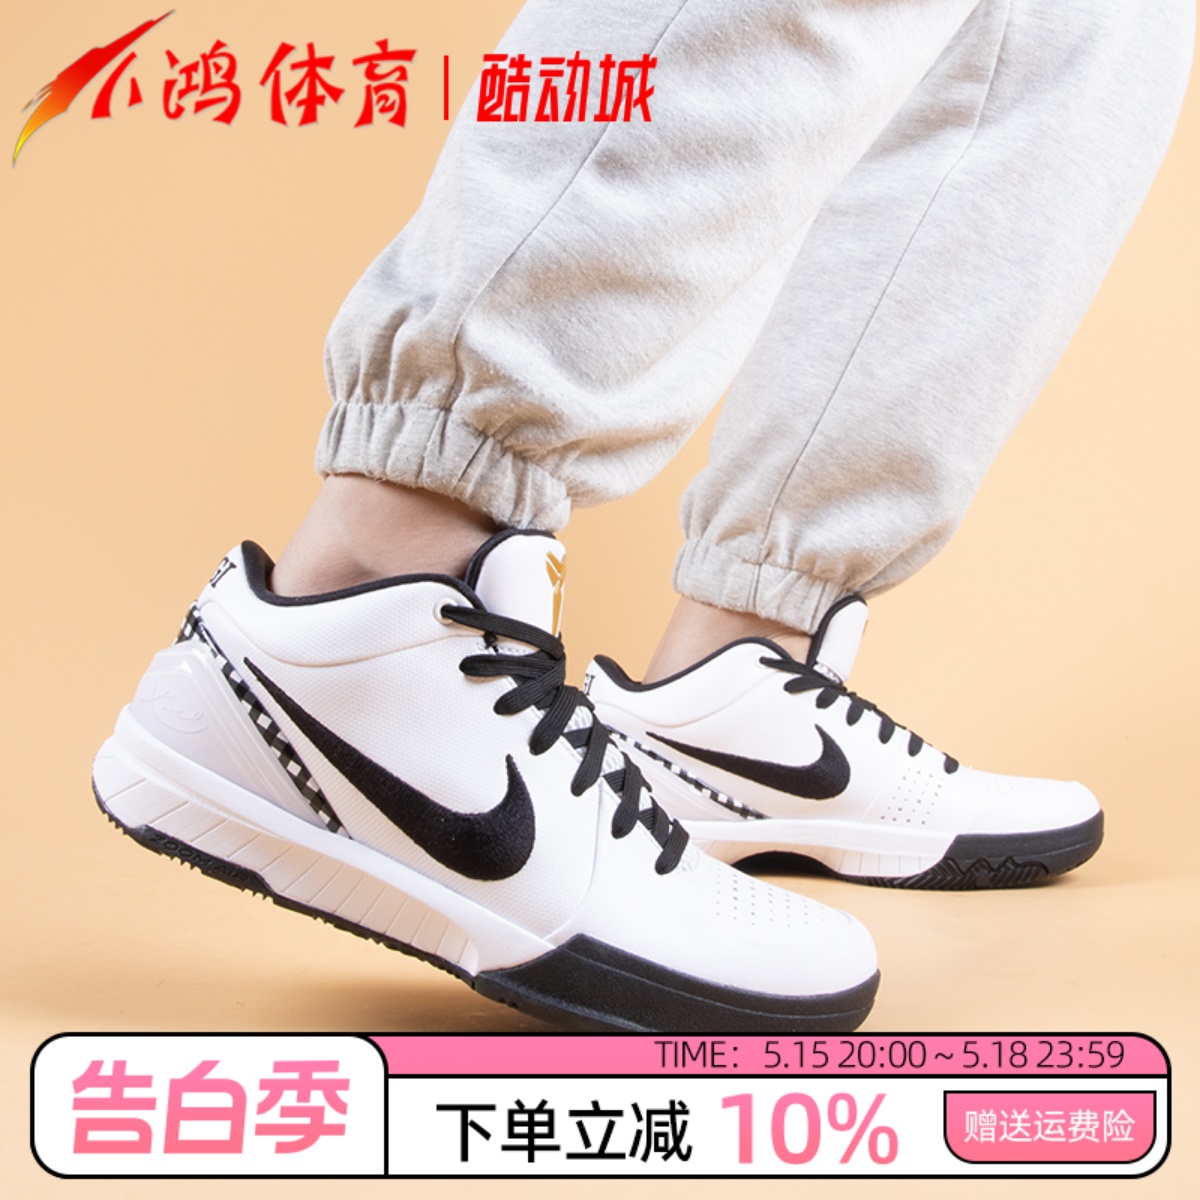 小鸿体育Nike Kobe 4 Protro 科比 黑白 低帮篮球鞋 FJ9363-100